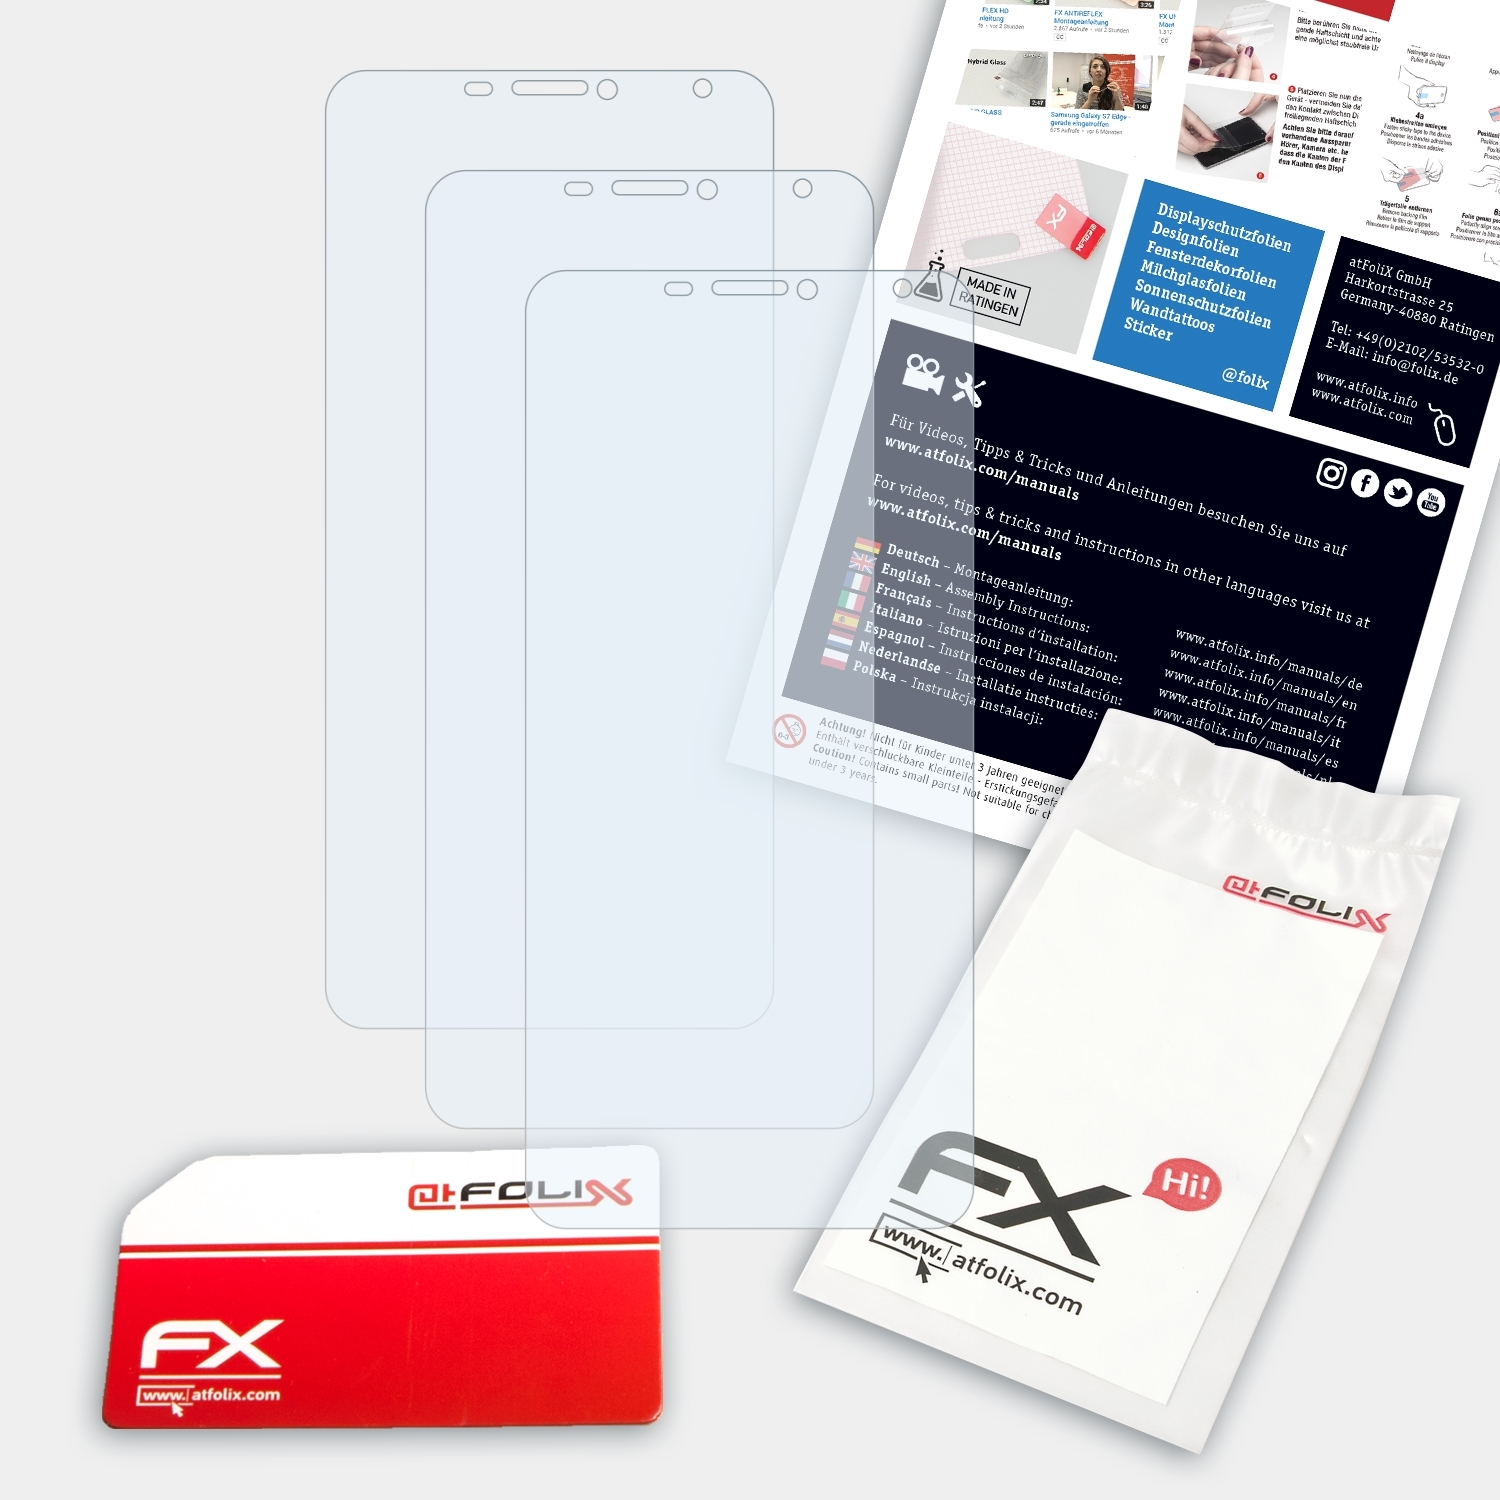 Pro) Displayschutz(für FX-Clear ATFOLIX X7 3x Doogee